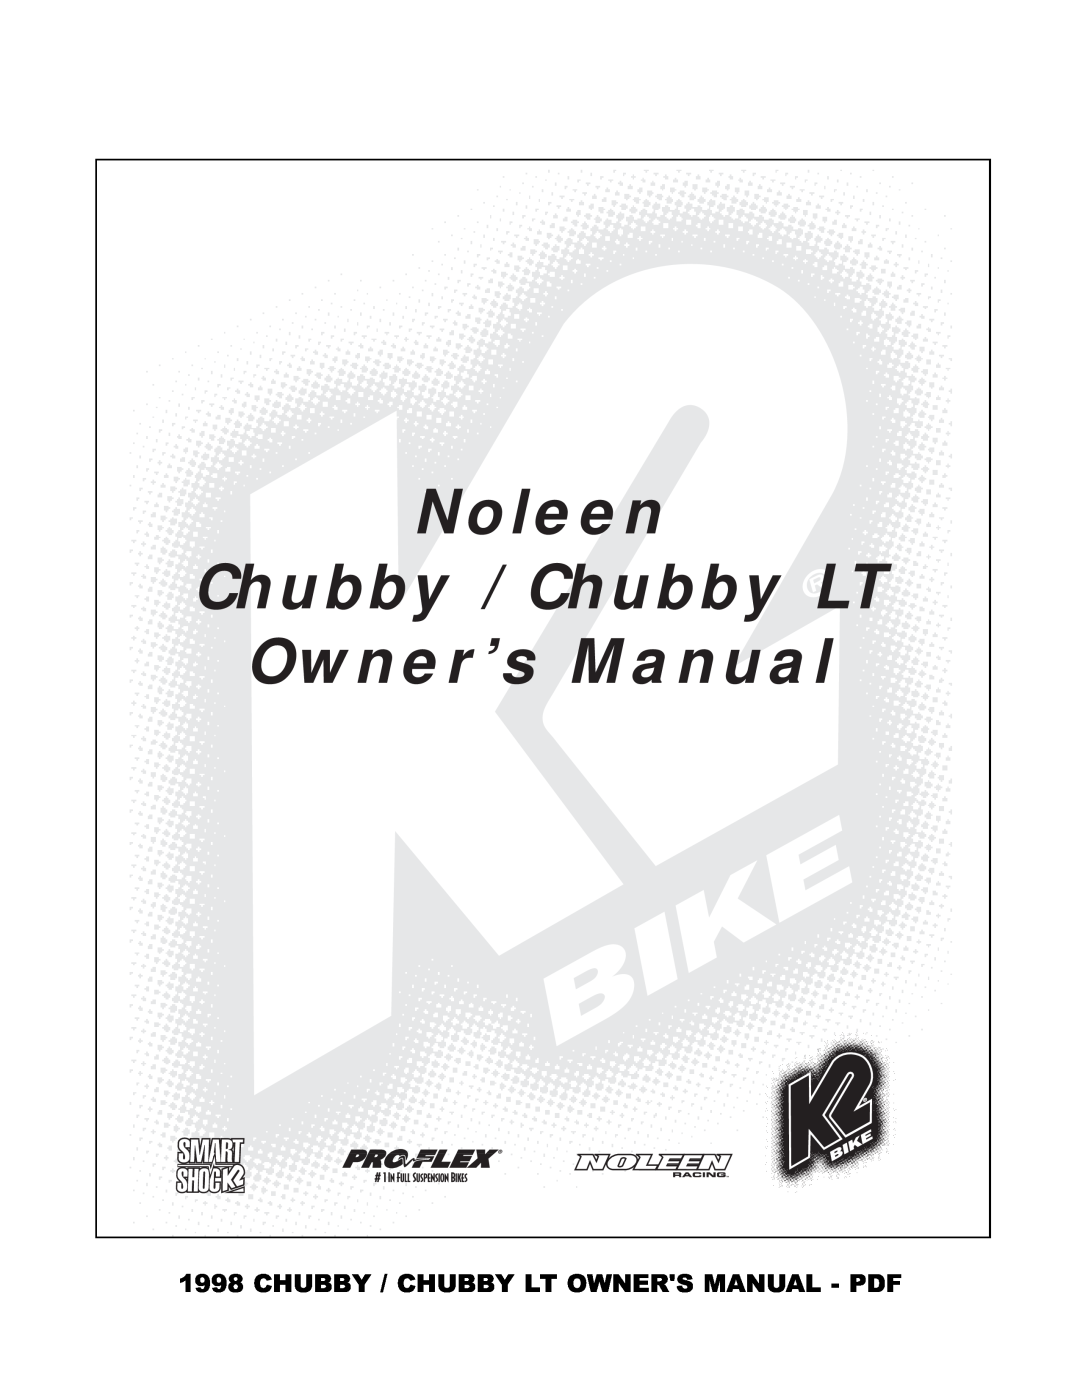 K2 Bike manual Chubby / Chubby Lt Owners Manual - Pdf, Noleen, Chubby / Chubby LT, Owner’s Manual 